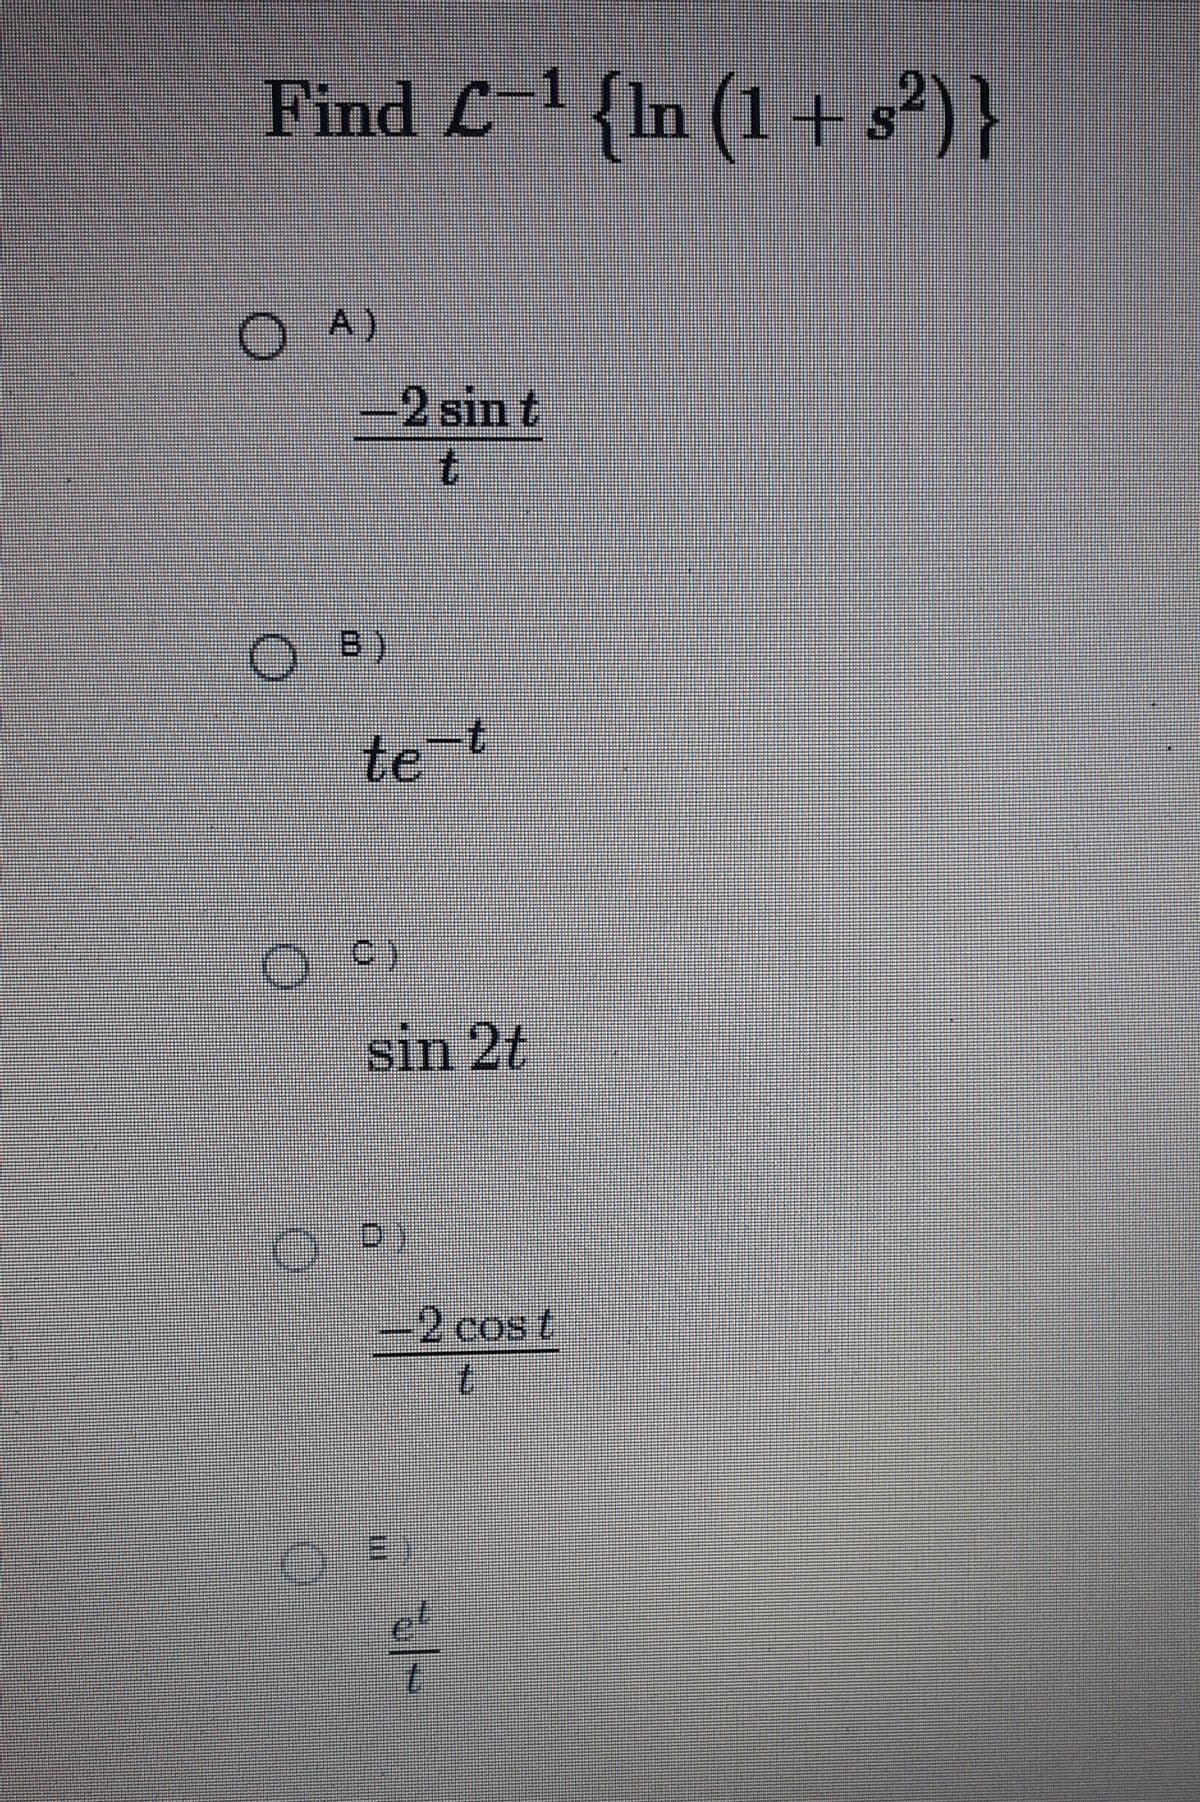 Find C1(In (1 + s²) }
' {In (1+s²)}
OA)
-2 sin t
te-t
sin 2t
D)
-2 cos t
el
